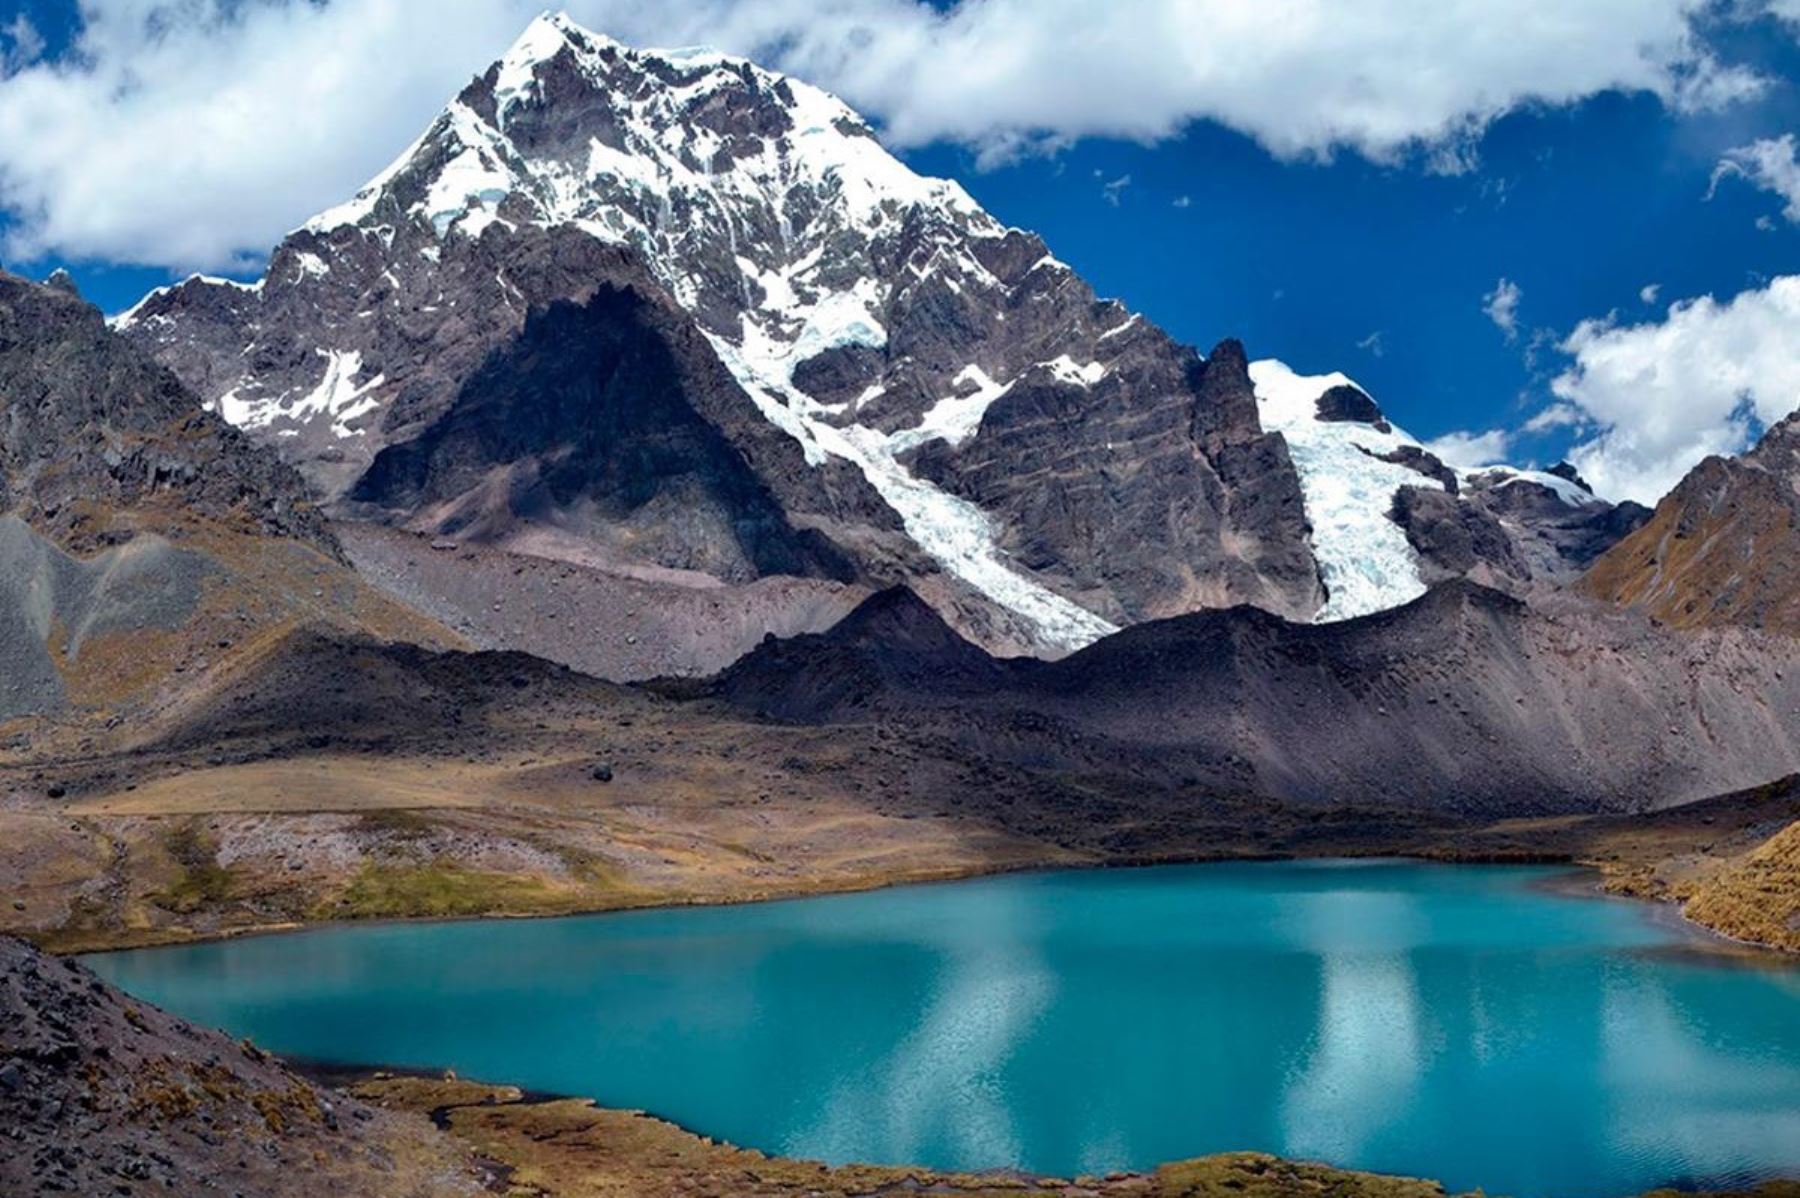 El Área de Conservación Regional Ausangate busca conservar una muestra representativa de la ecorregión Puna de los Andes Centrales del Cusco, que contiene un alto valor biológico, paisajístico y de regulación hídrica. ANDINA/Difusión